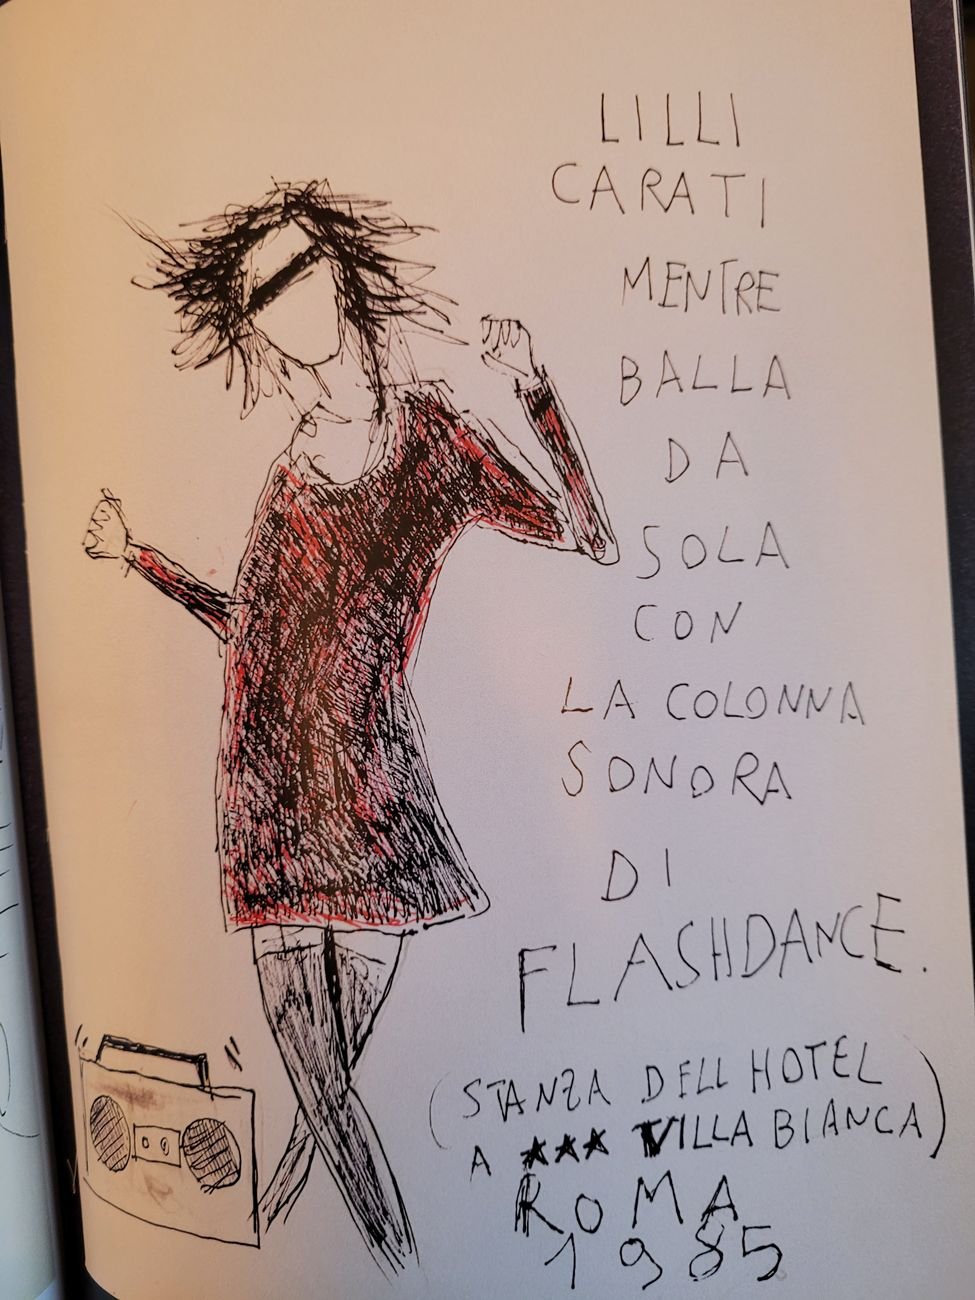 Manuel Cossu, Lilli Carati è rinata una stella, 1986, artzine